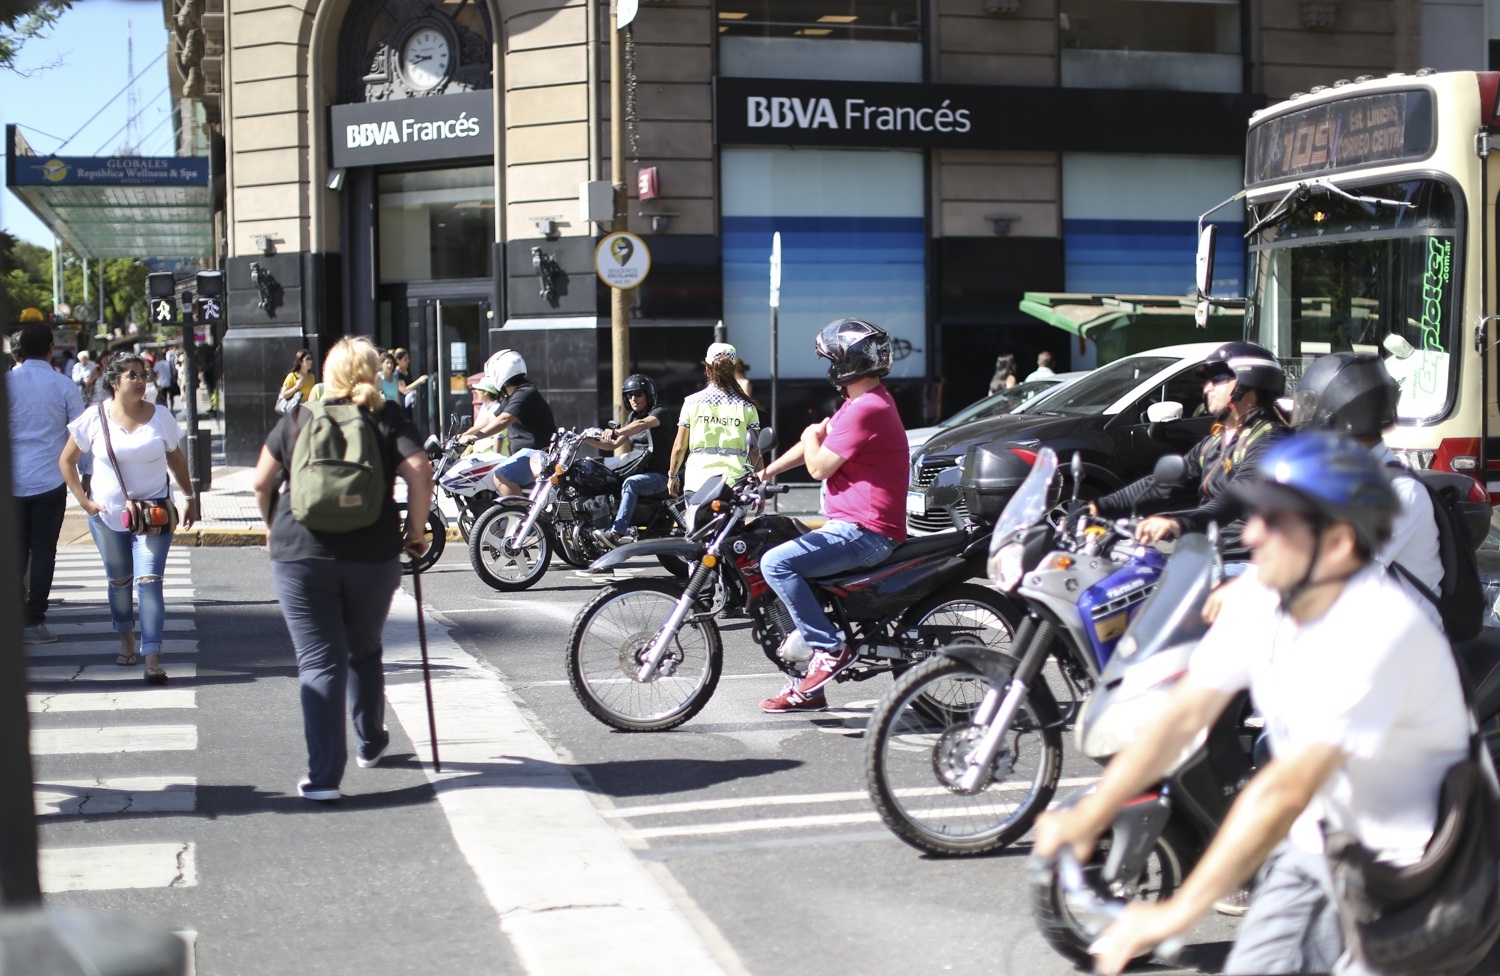 El exceso de velocidad causa el 77% de las muertes de motociclistas, según informe del Observatorio de Seguridad Vial de la Ciudad de Buenos Aires